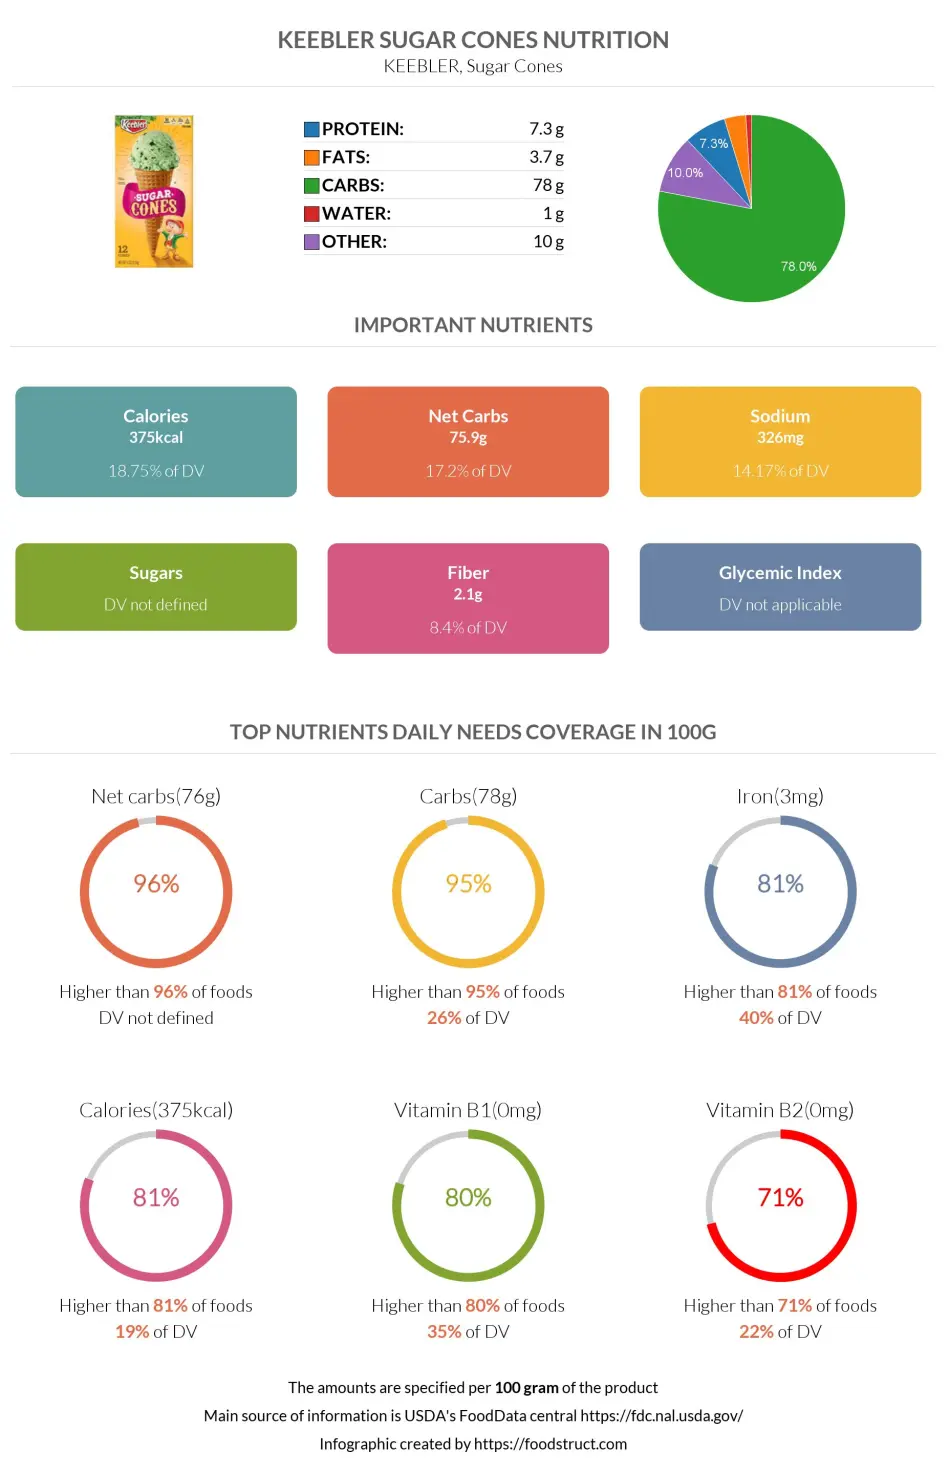 Keebler Sugar Cones nutrition infographic